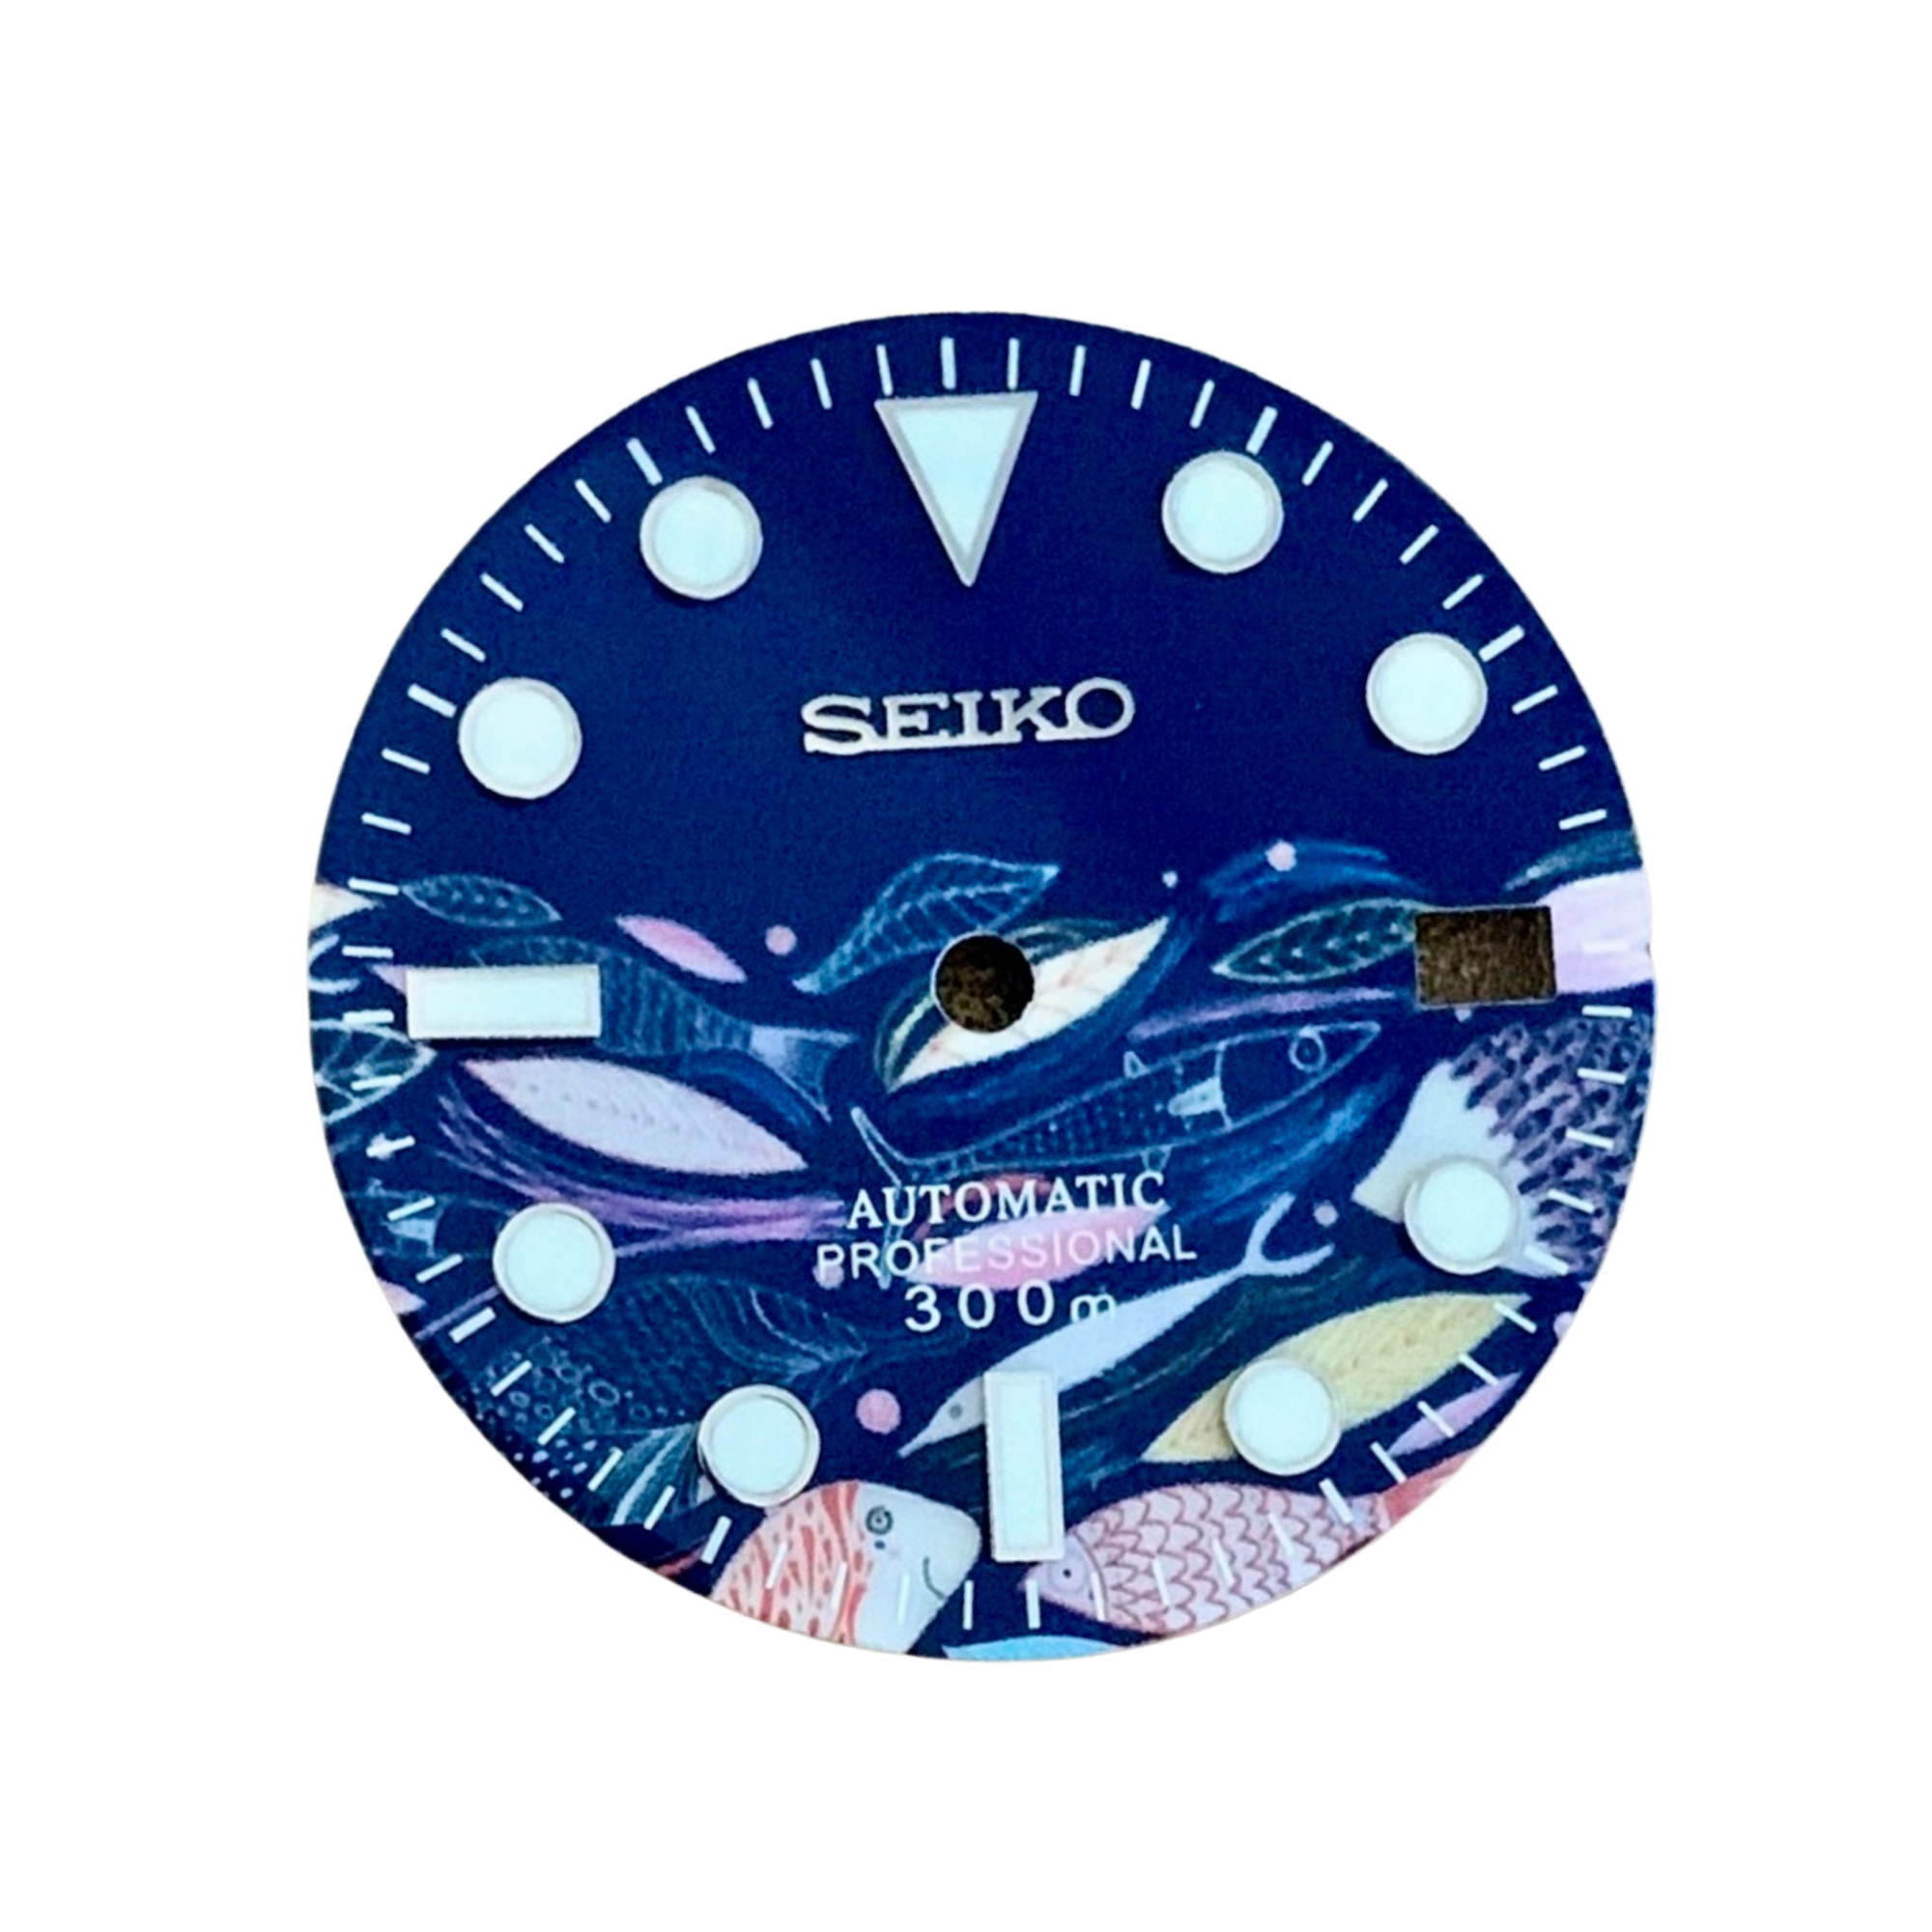 Dream Watches Special Edition Seiko Mod Dial (DA-19)